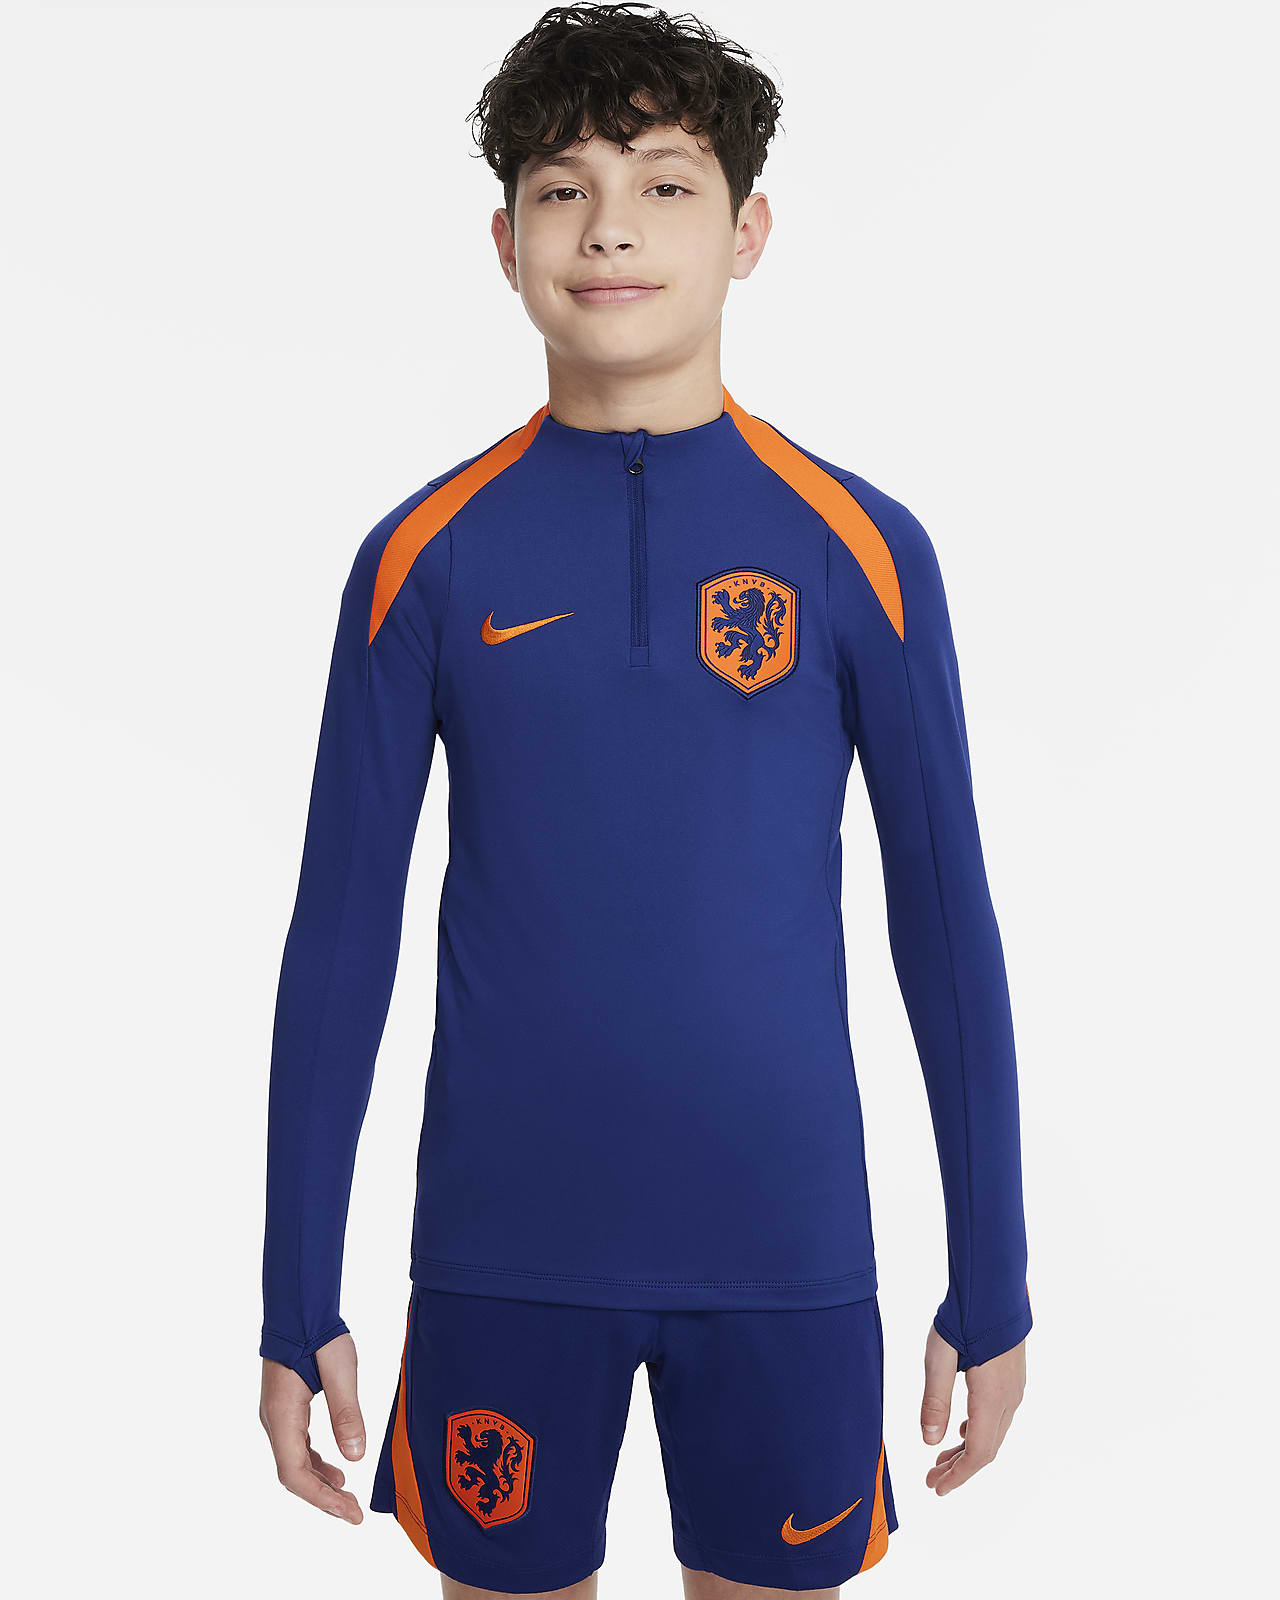 Nederland Strike Nike Dri-FIT fotballtreningsoverdel til store barn